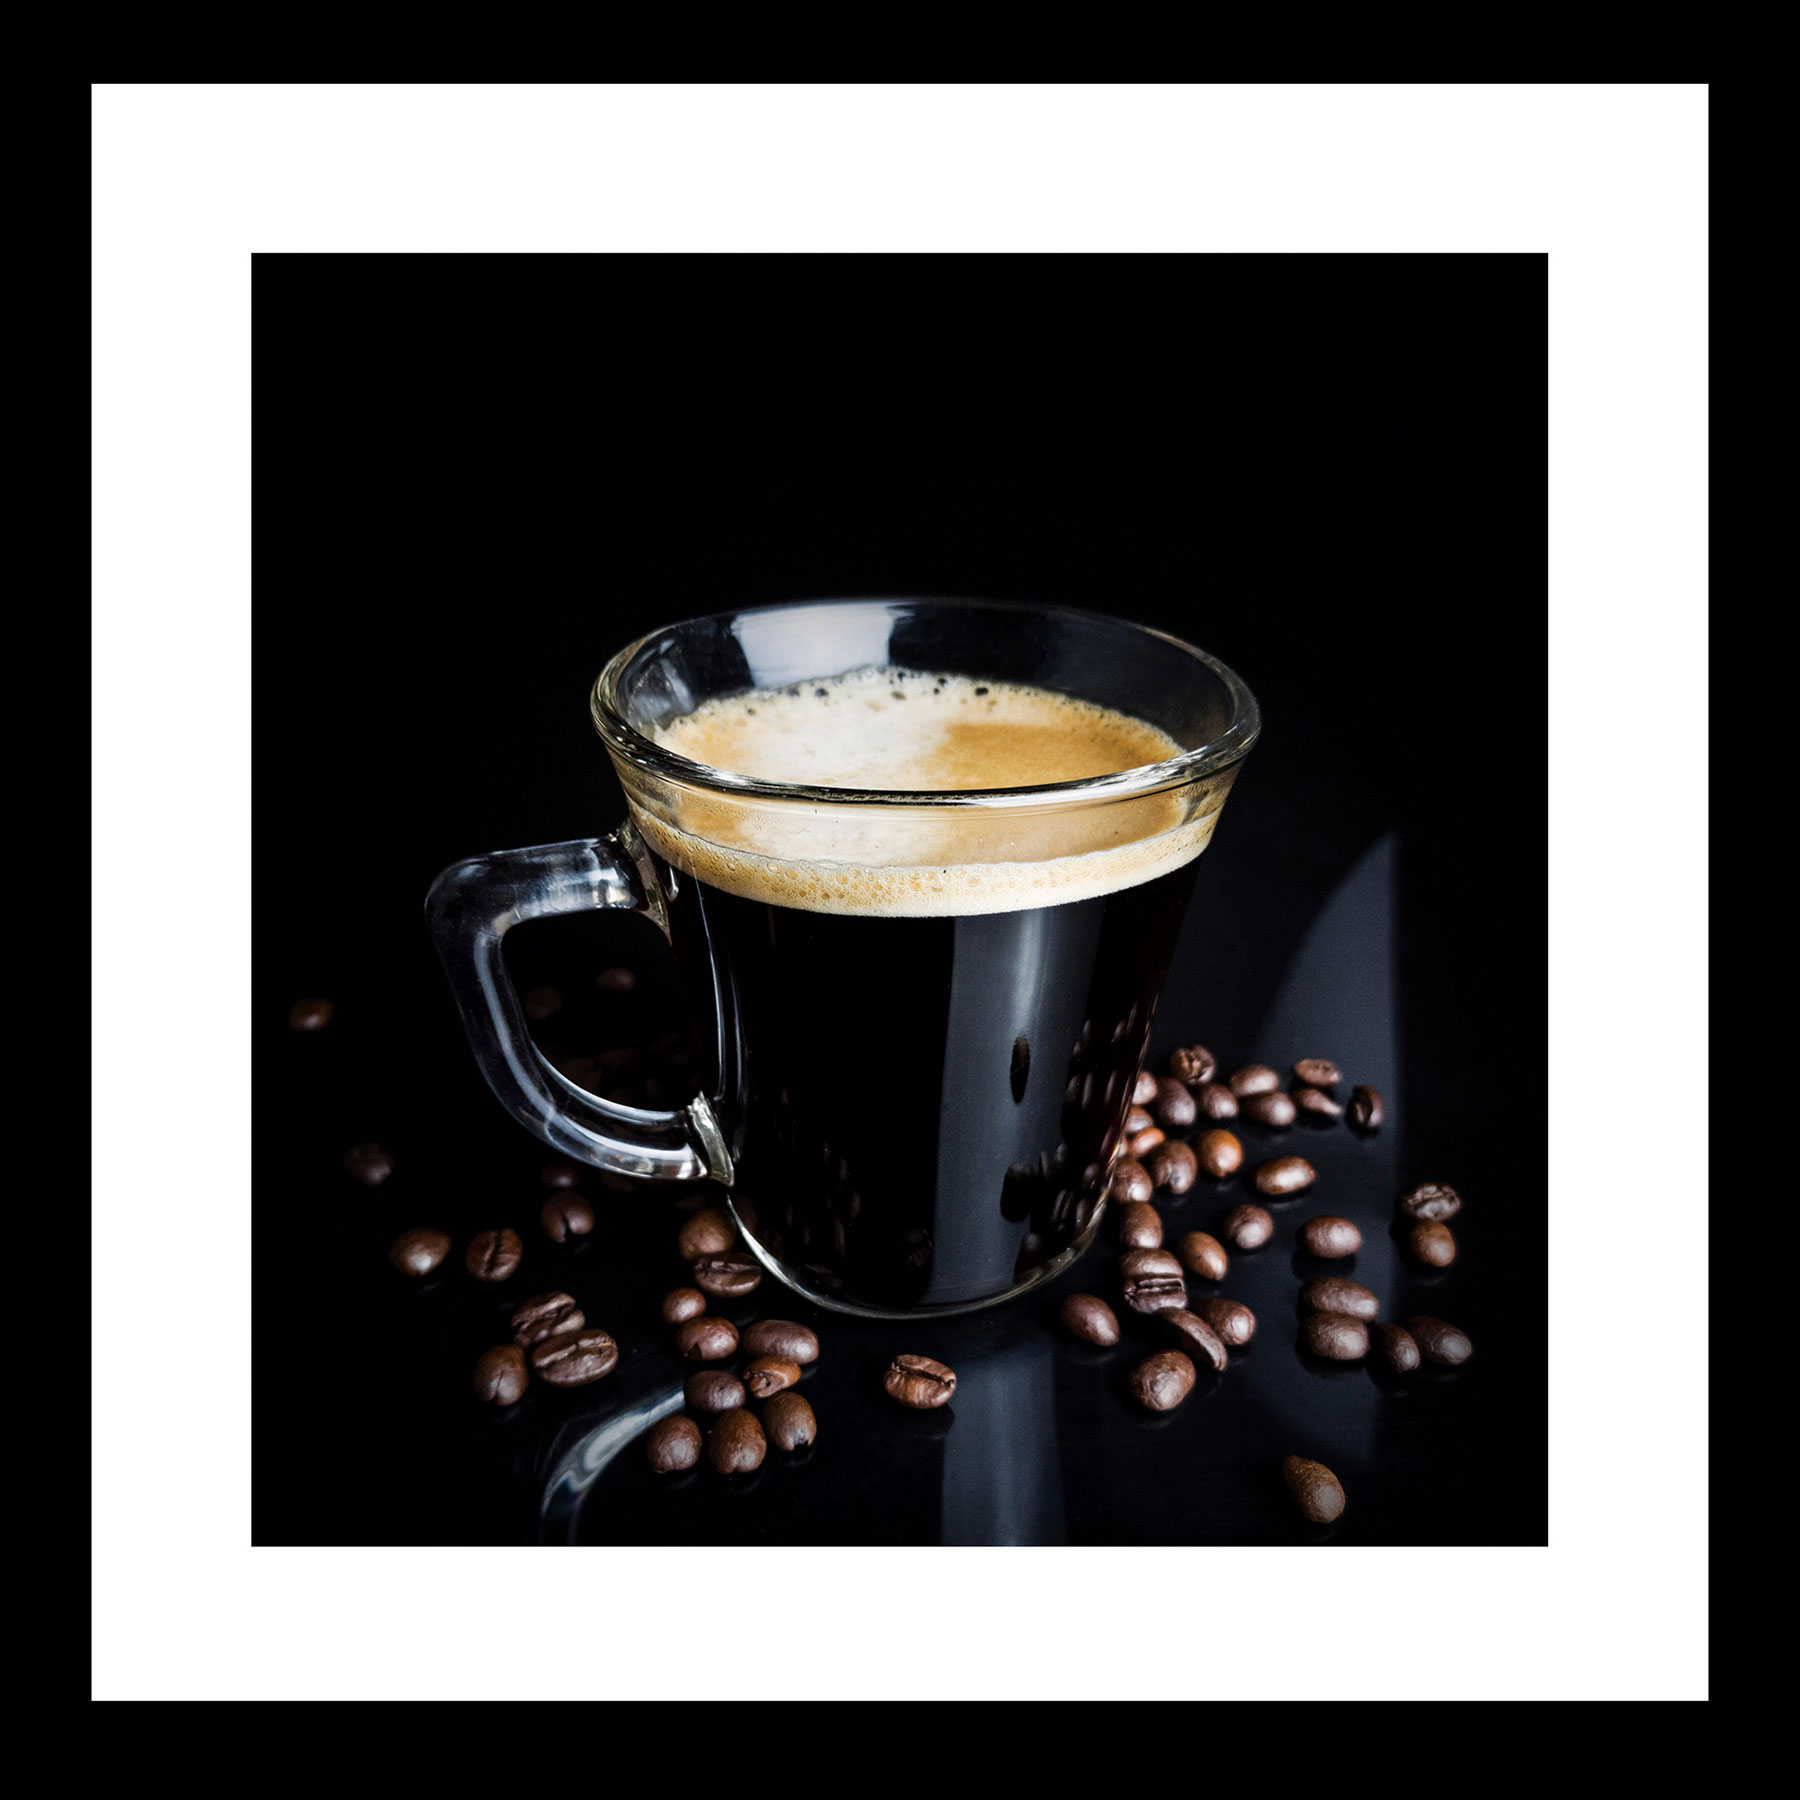 Glasbild 30x30cm Wandbild Kaffee Tasse Schwarz Weiß Wanddeko Glas Coffee Deko